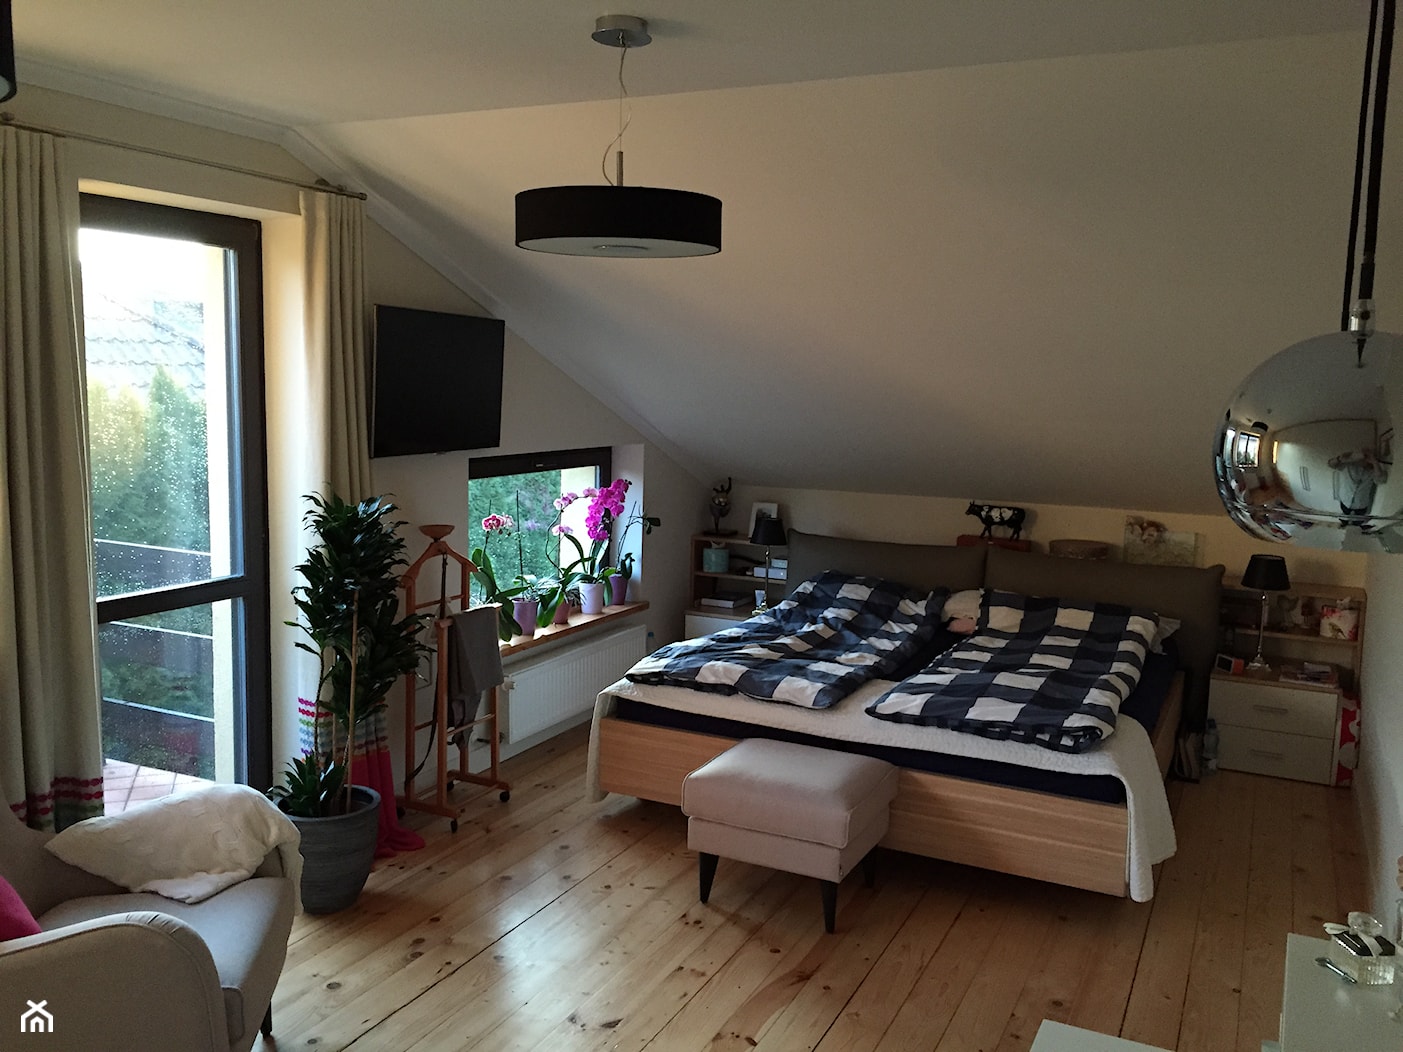 Sypialnia - Średnia biała sypialnia na poddaszu z balkonem / tarasem, styl skandynawski - zdjęcie od m.wroblewski - Homebook